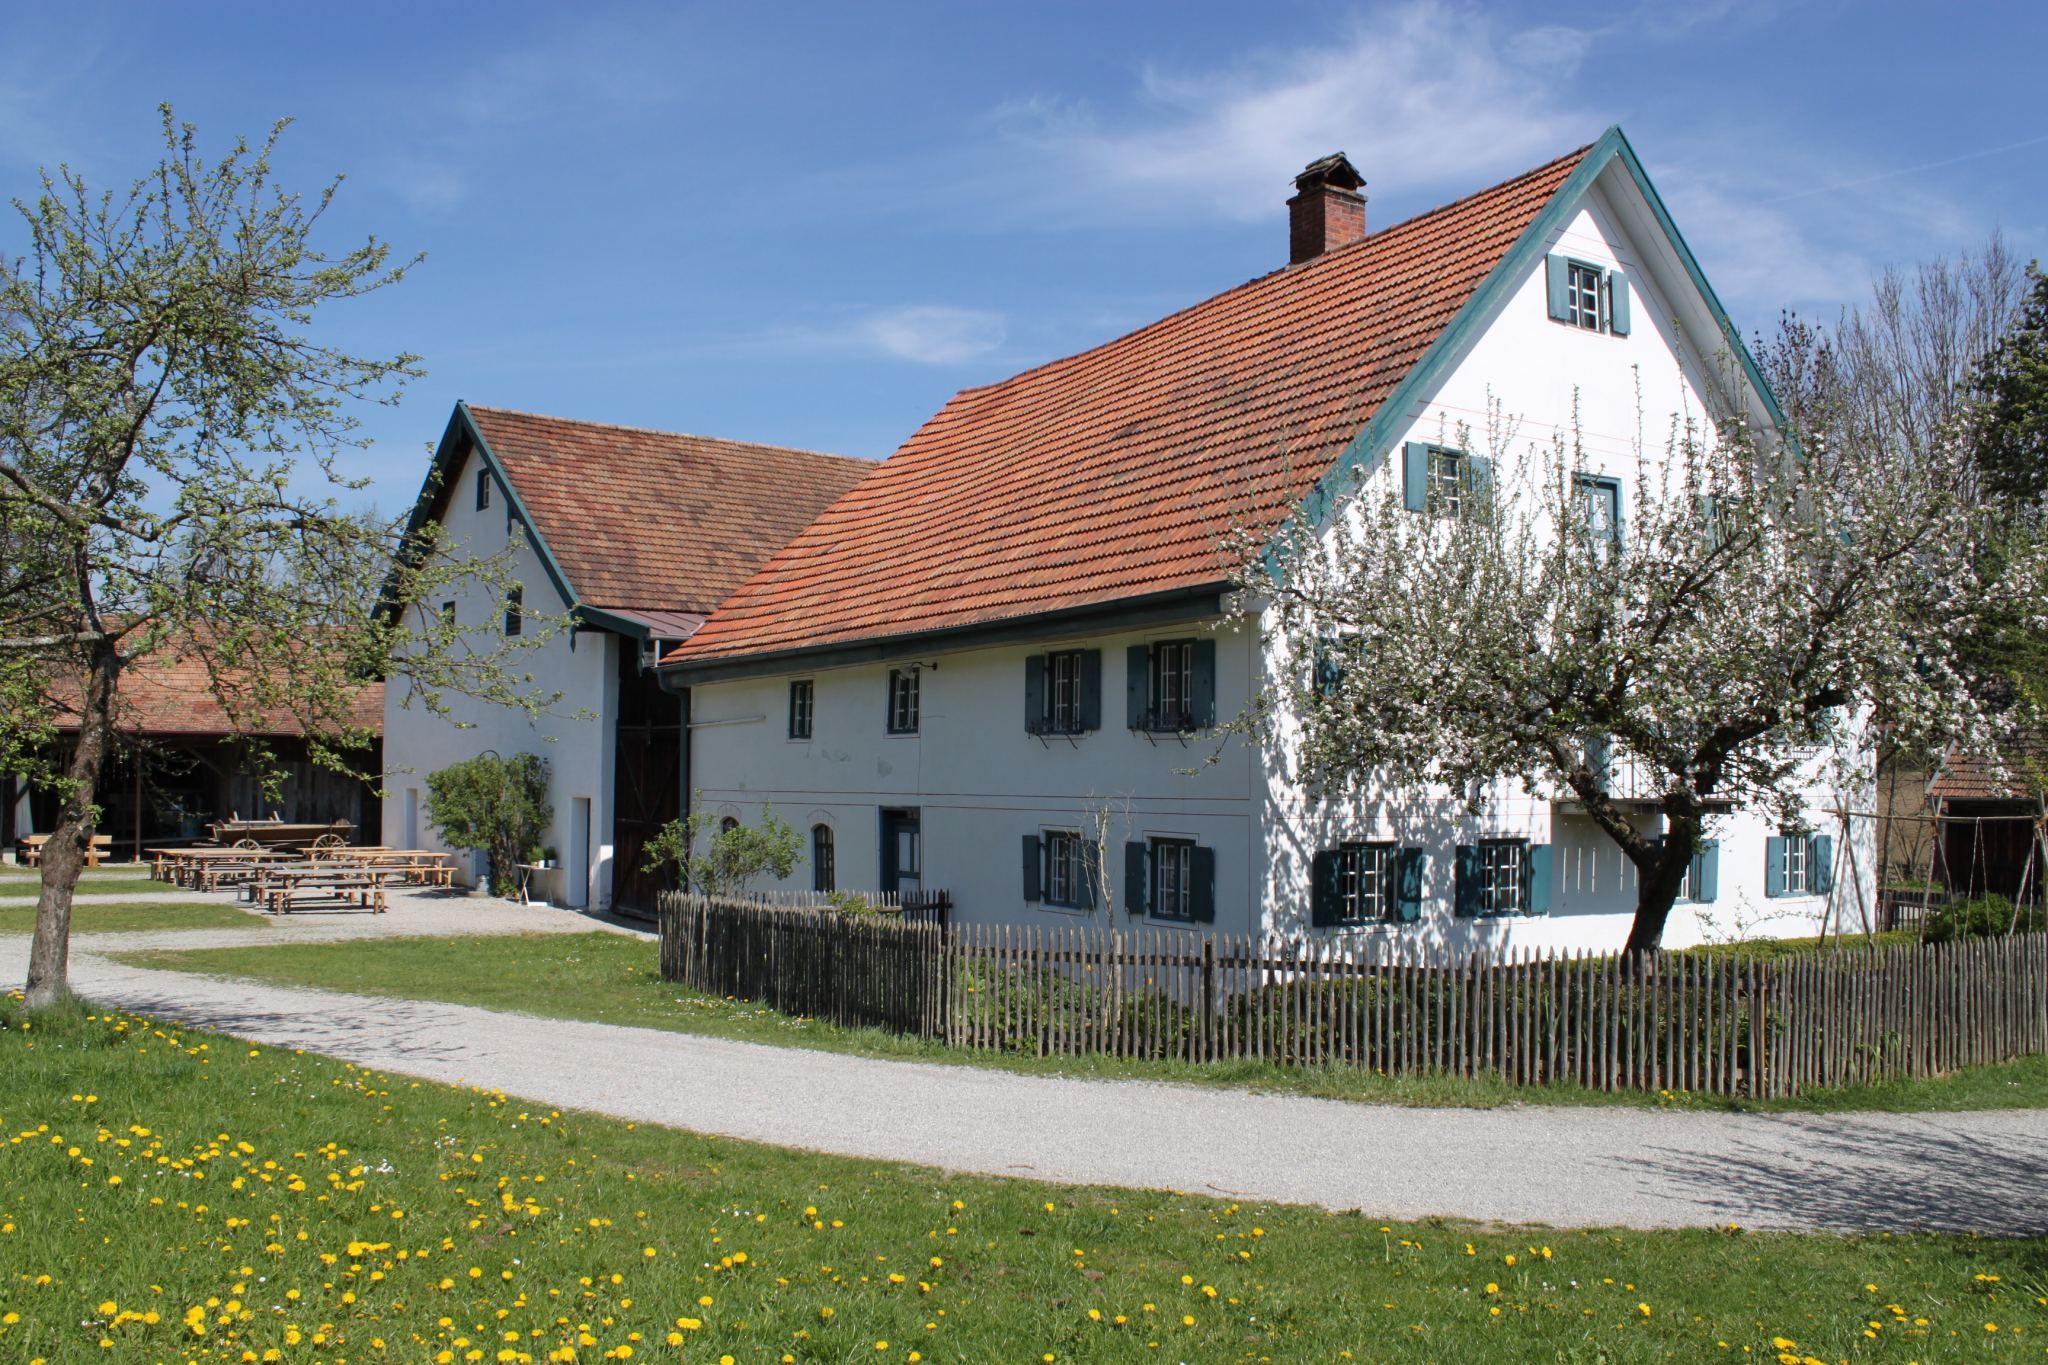 Bauernhofmuseum Jexhof - ©Bauernhofmuseum Jexhof